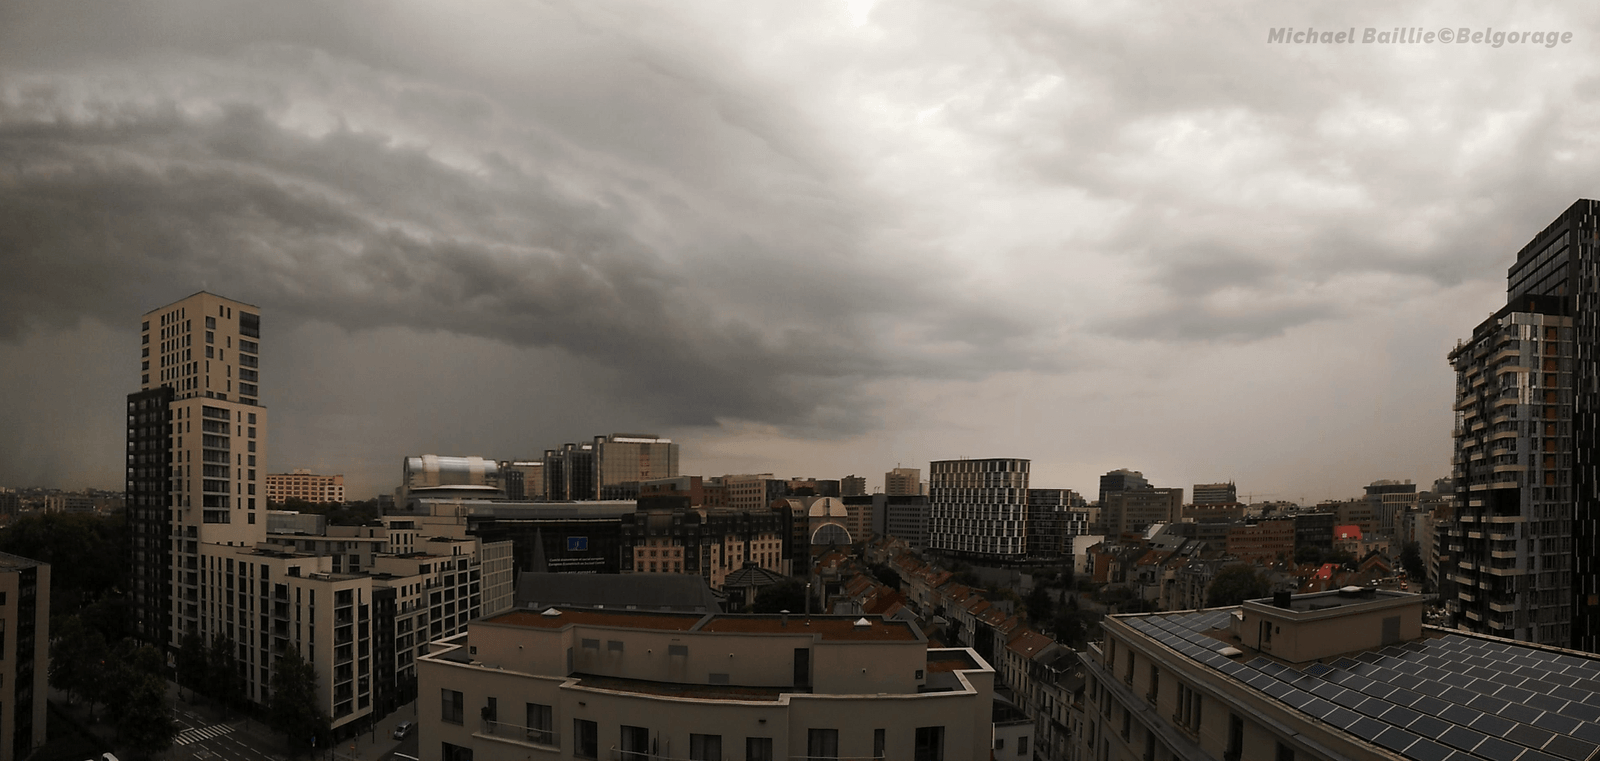 Orage monocellulaire observé depuis la région de Bruxelles, le 07 juin 2018 à 07h52. Crédit photo : Michael Baillie